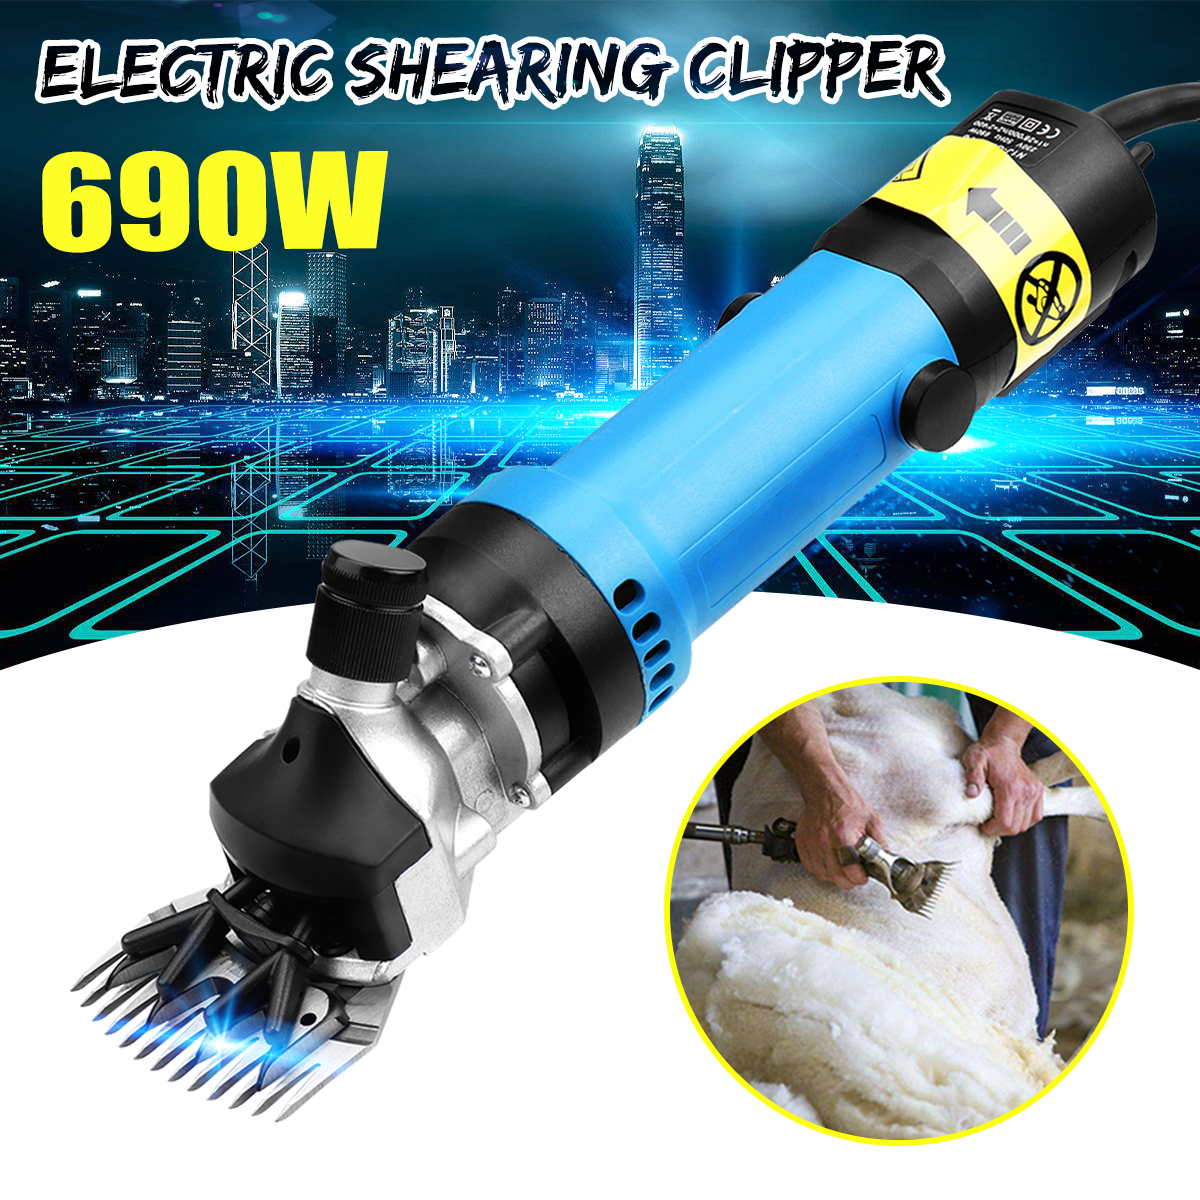 220V-690W-Flexible-Shaft-Electric-Sheep-Goat-Pruning-Shearing-Machine-Clipper-Shears-Cutter-Wool-Sci-1541162-8